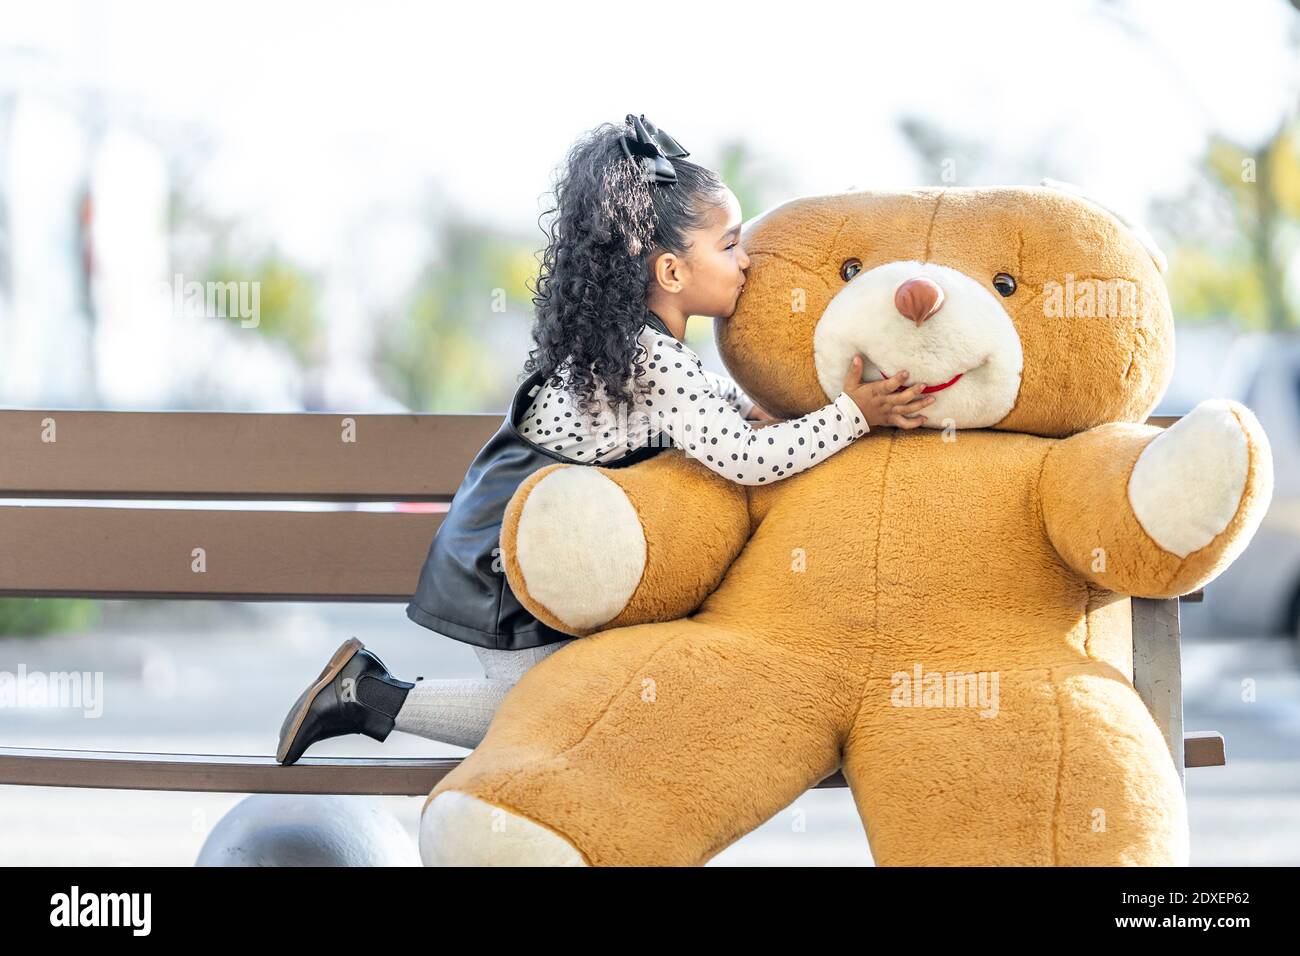 Une fille embrasse un ours en peluche tout en s'agenouillant sur un banc Banque D'Images